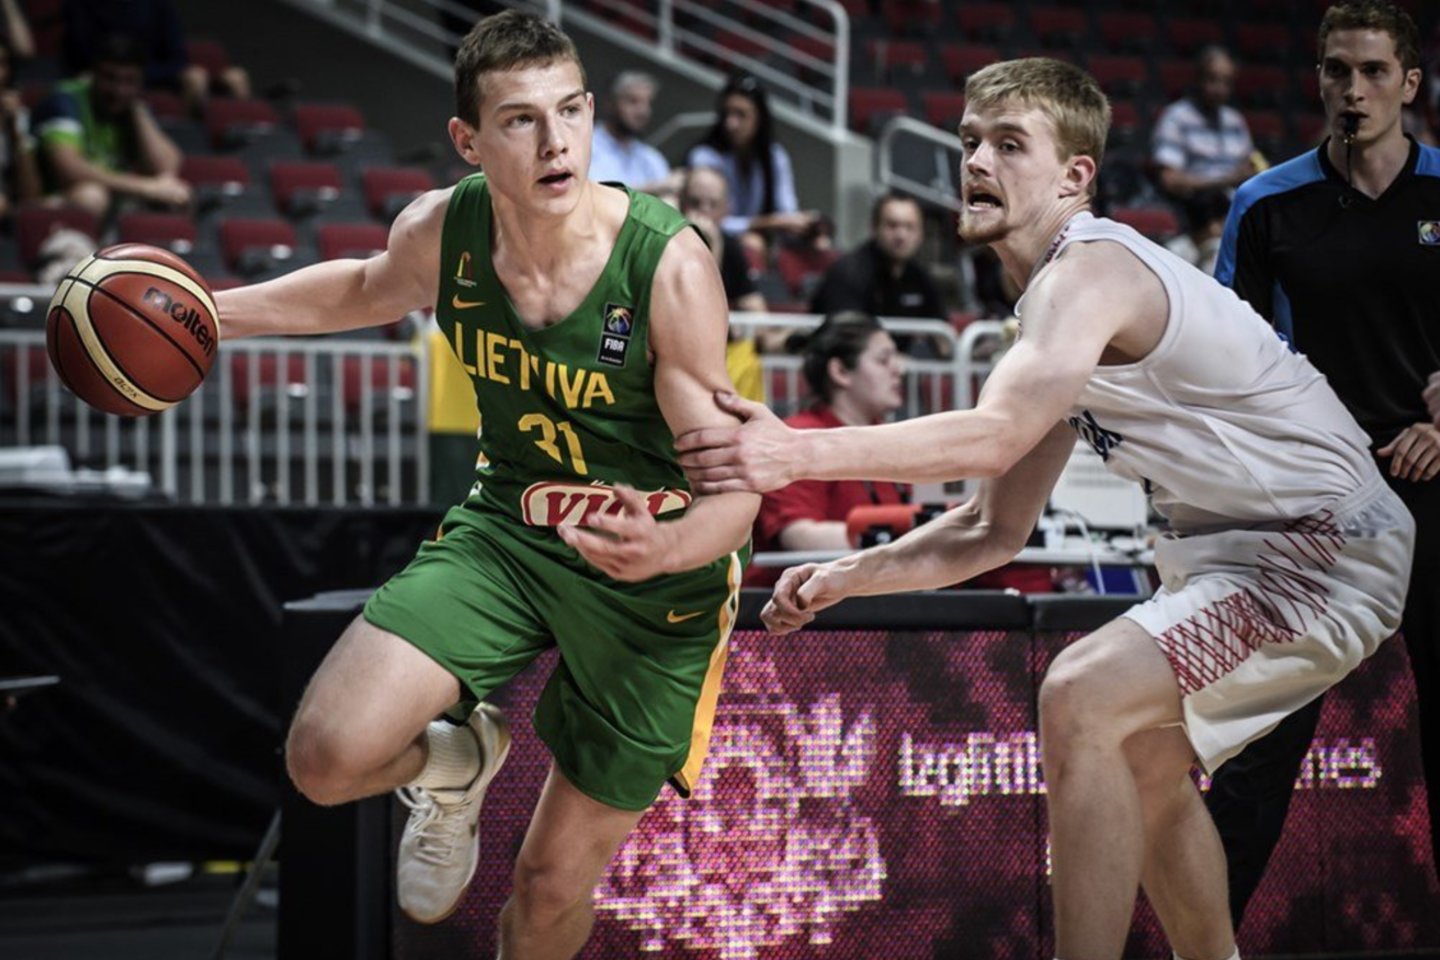  R.Jokubaitis kartu su Lietuvos jaunių rinktine sieks kelialapio į pasaulio čempionatą.<br> FIBA nuotr.